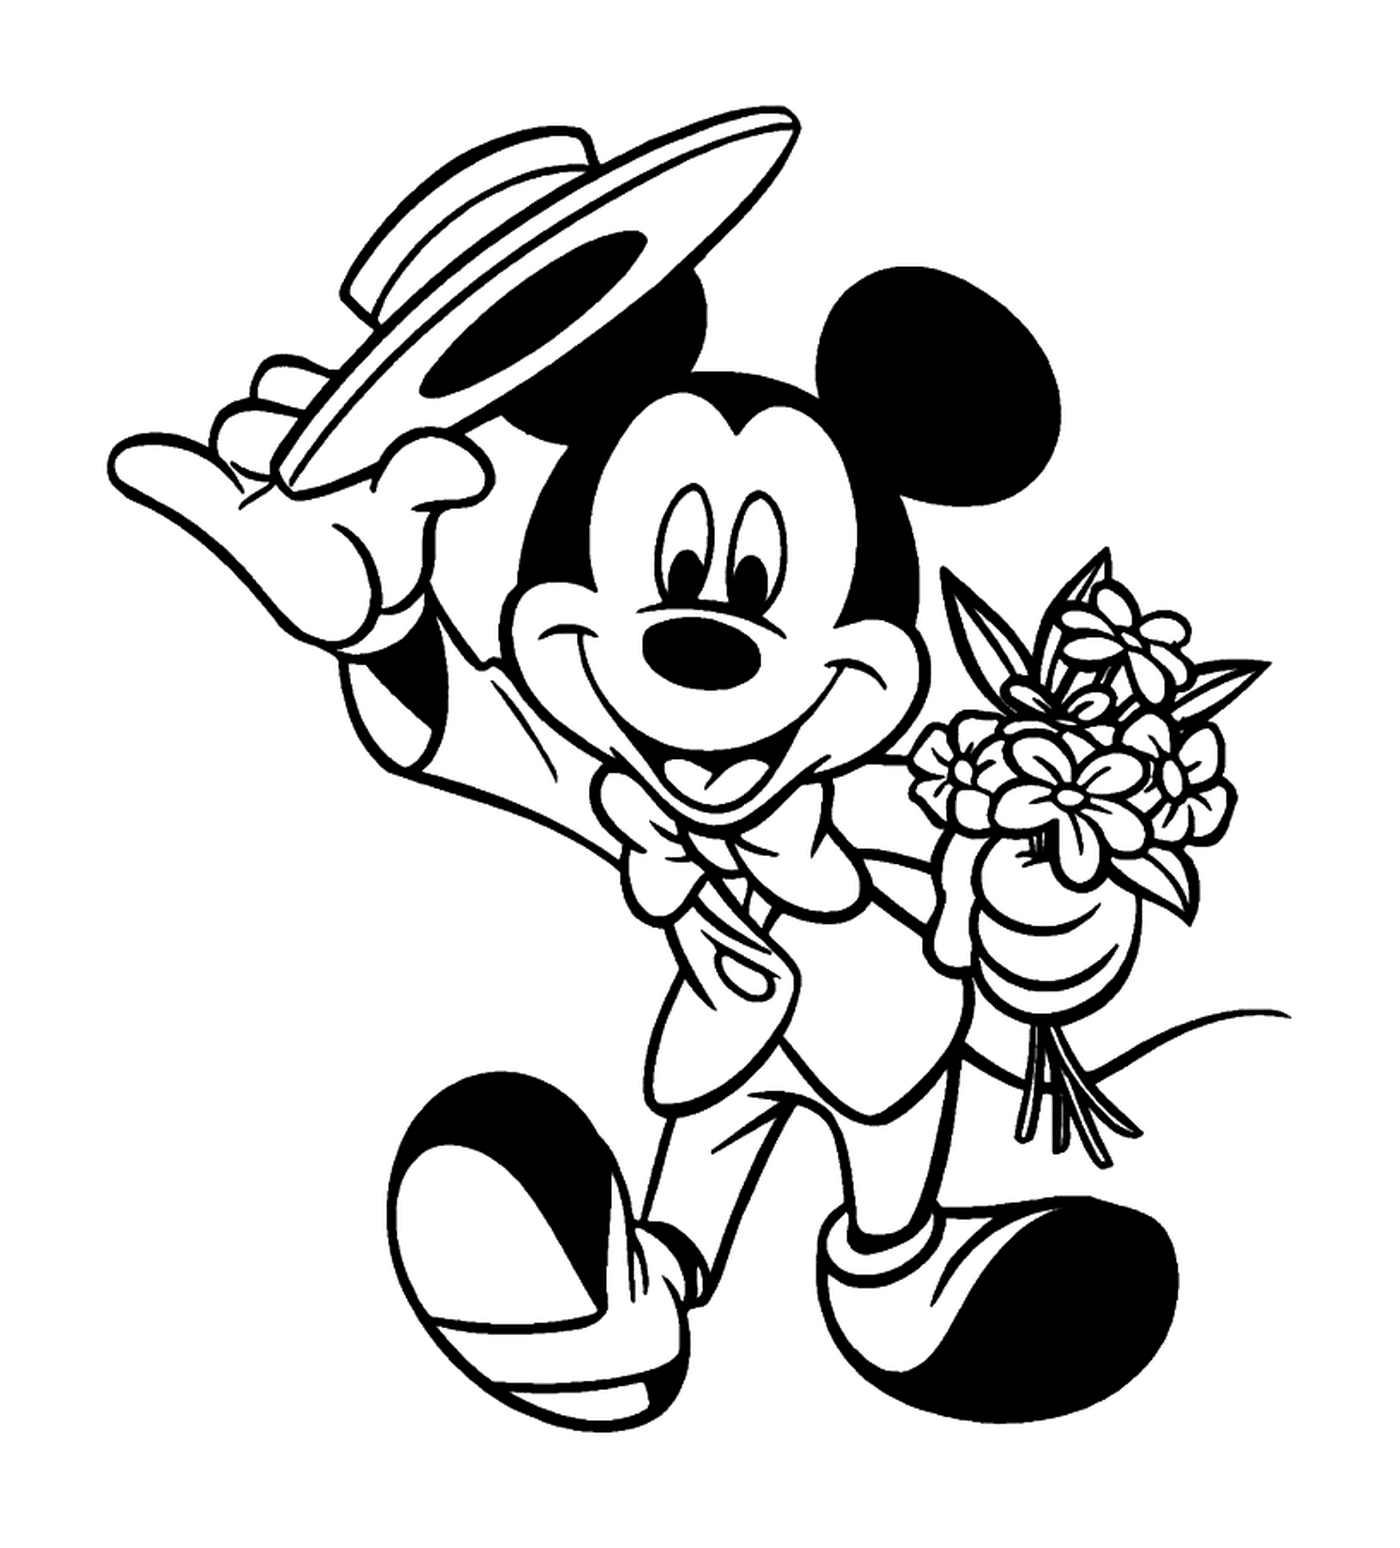  Mickey va ad una galante data: tenendo un bouquet 